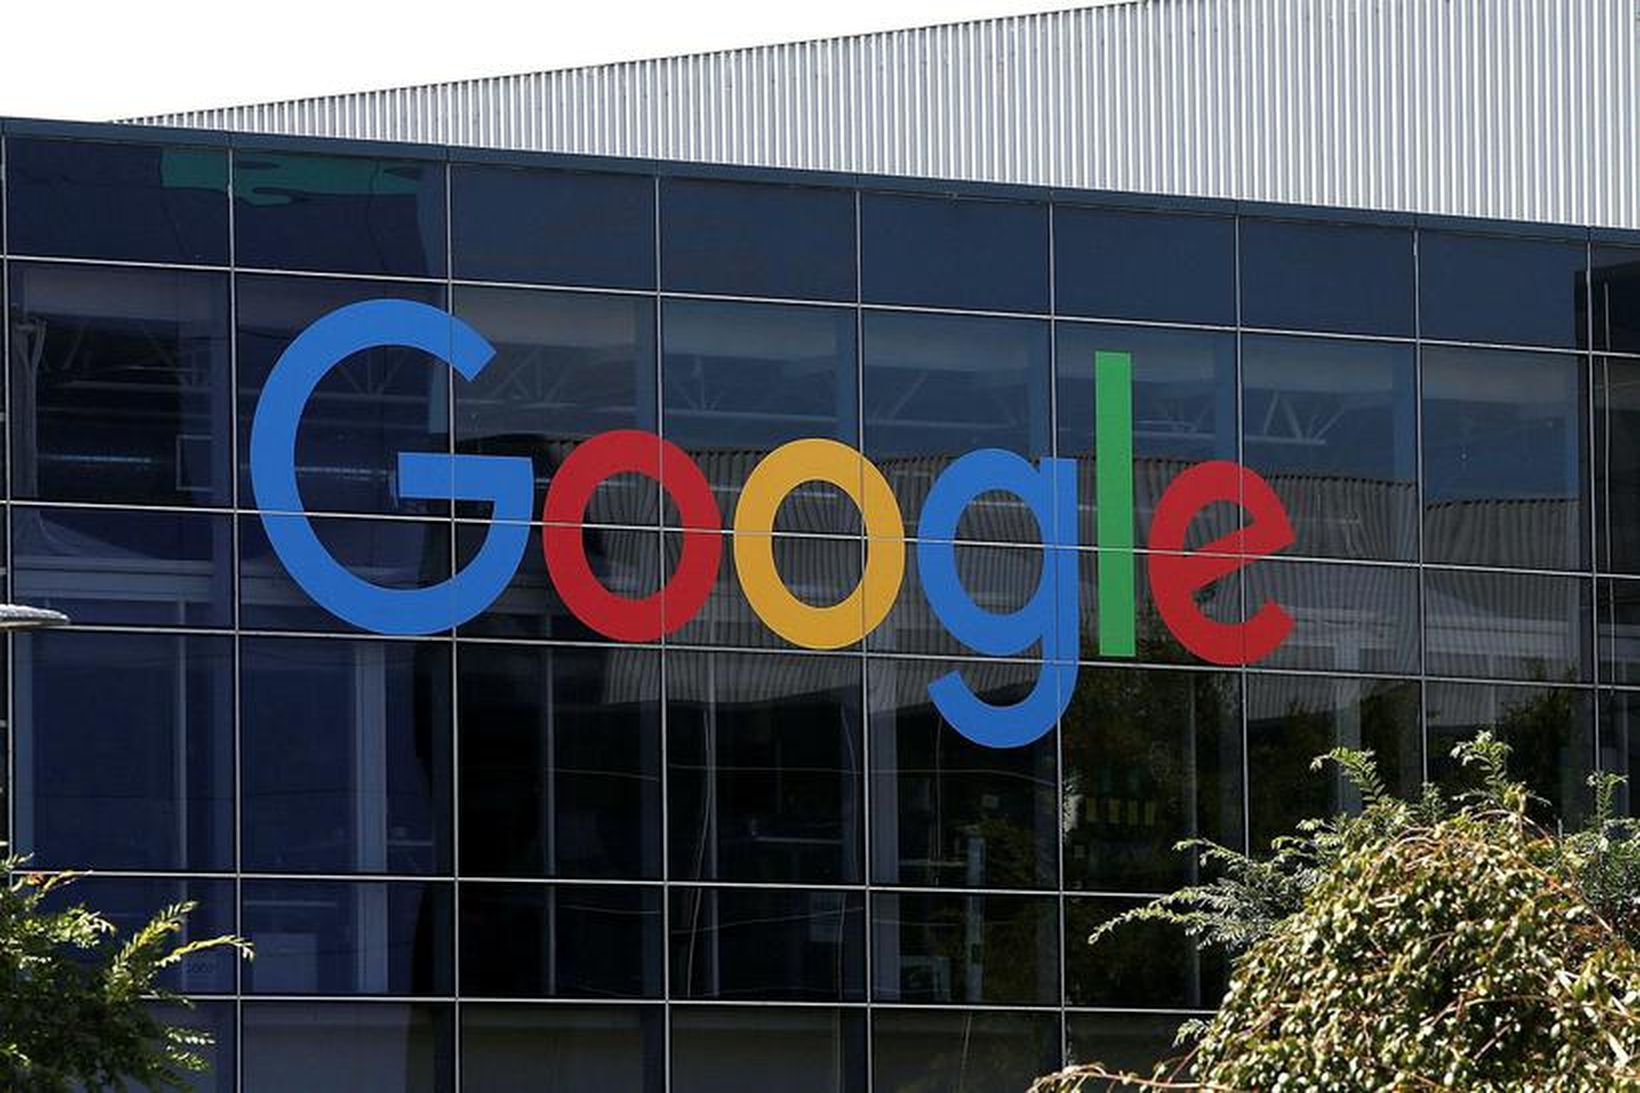 Arftaki Google Pixel verður kynntur 4. október næstkomandi.